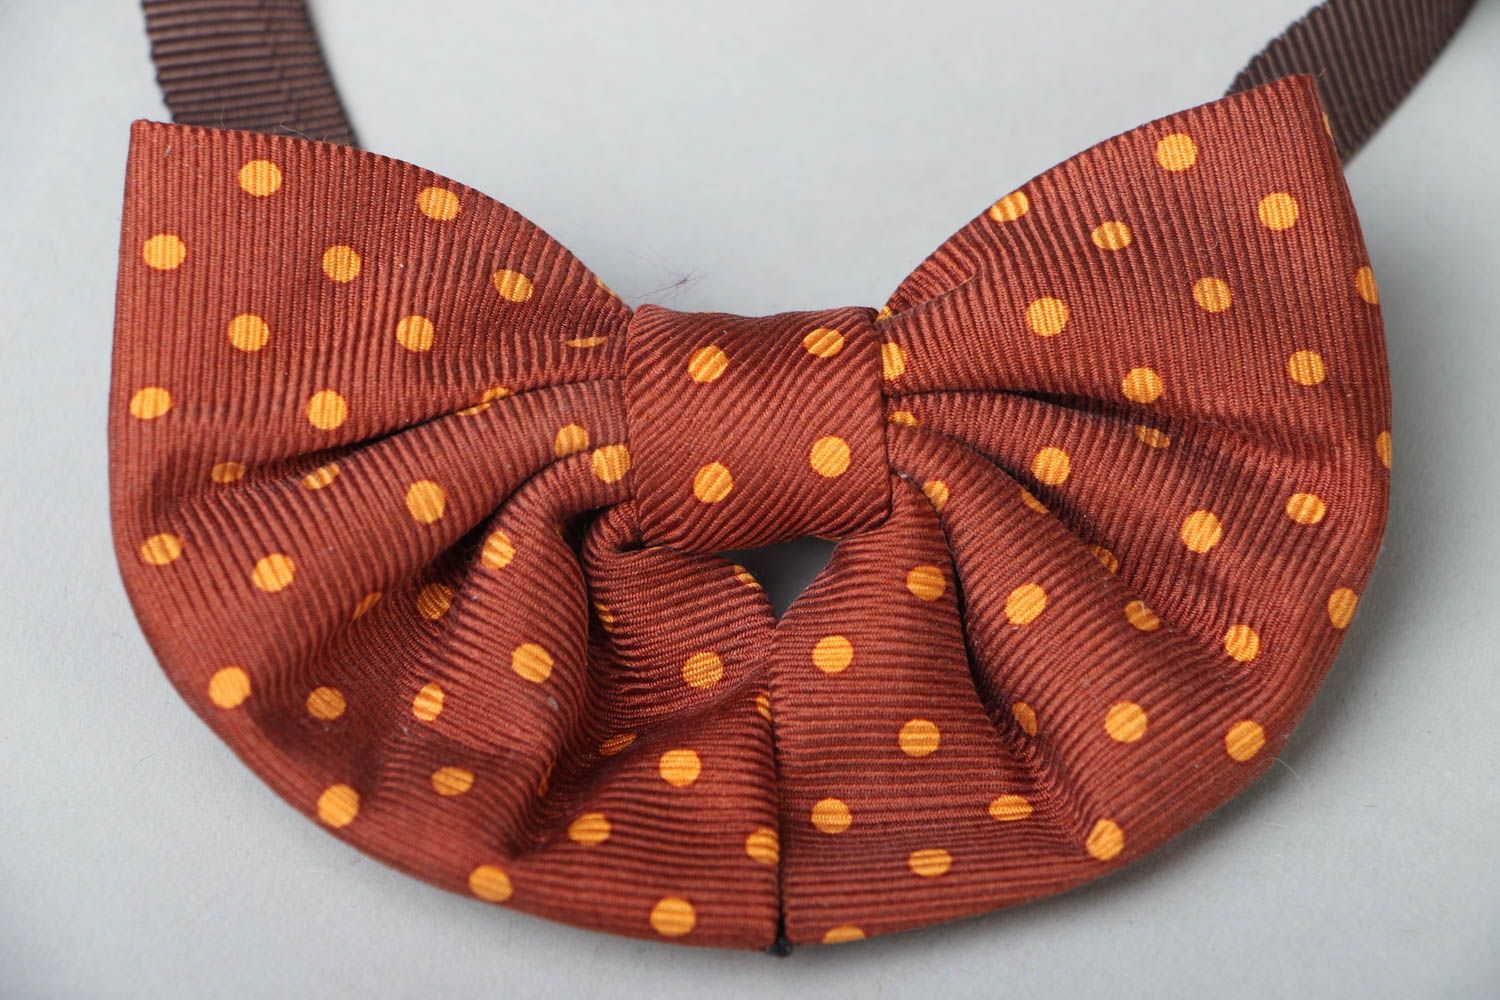 Textile bow tie photo 2